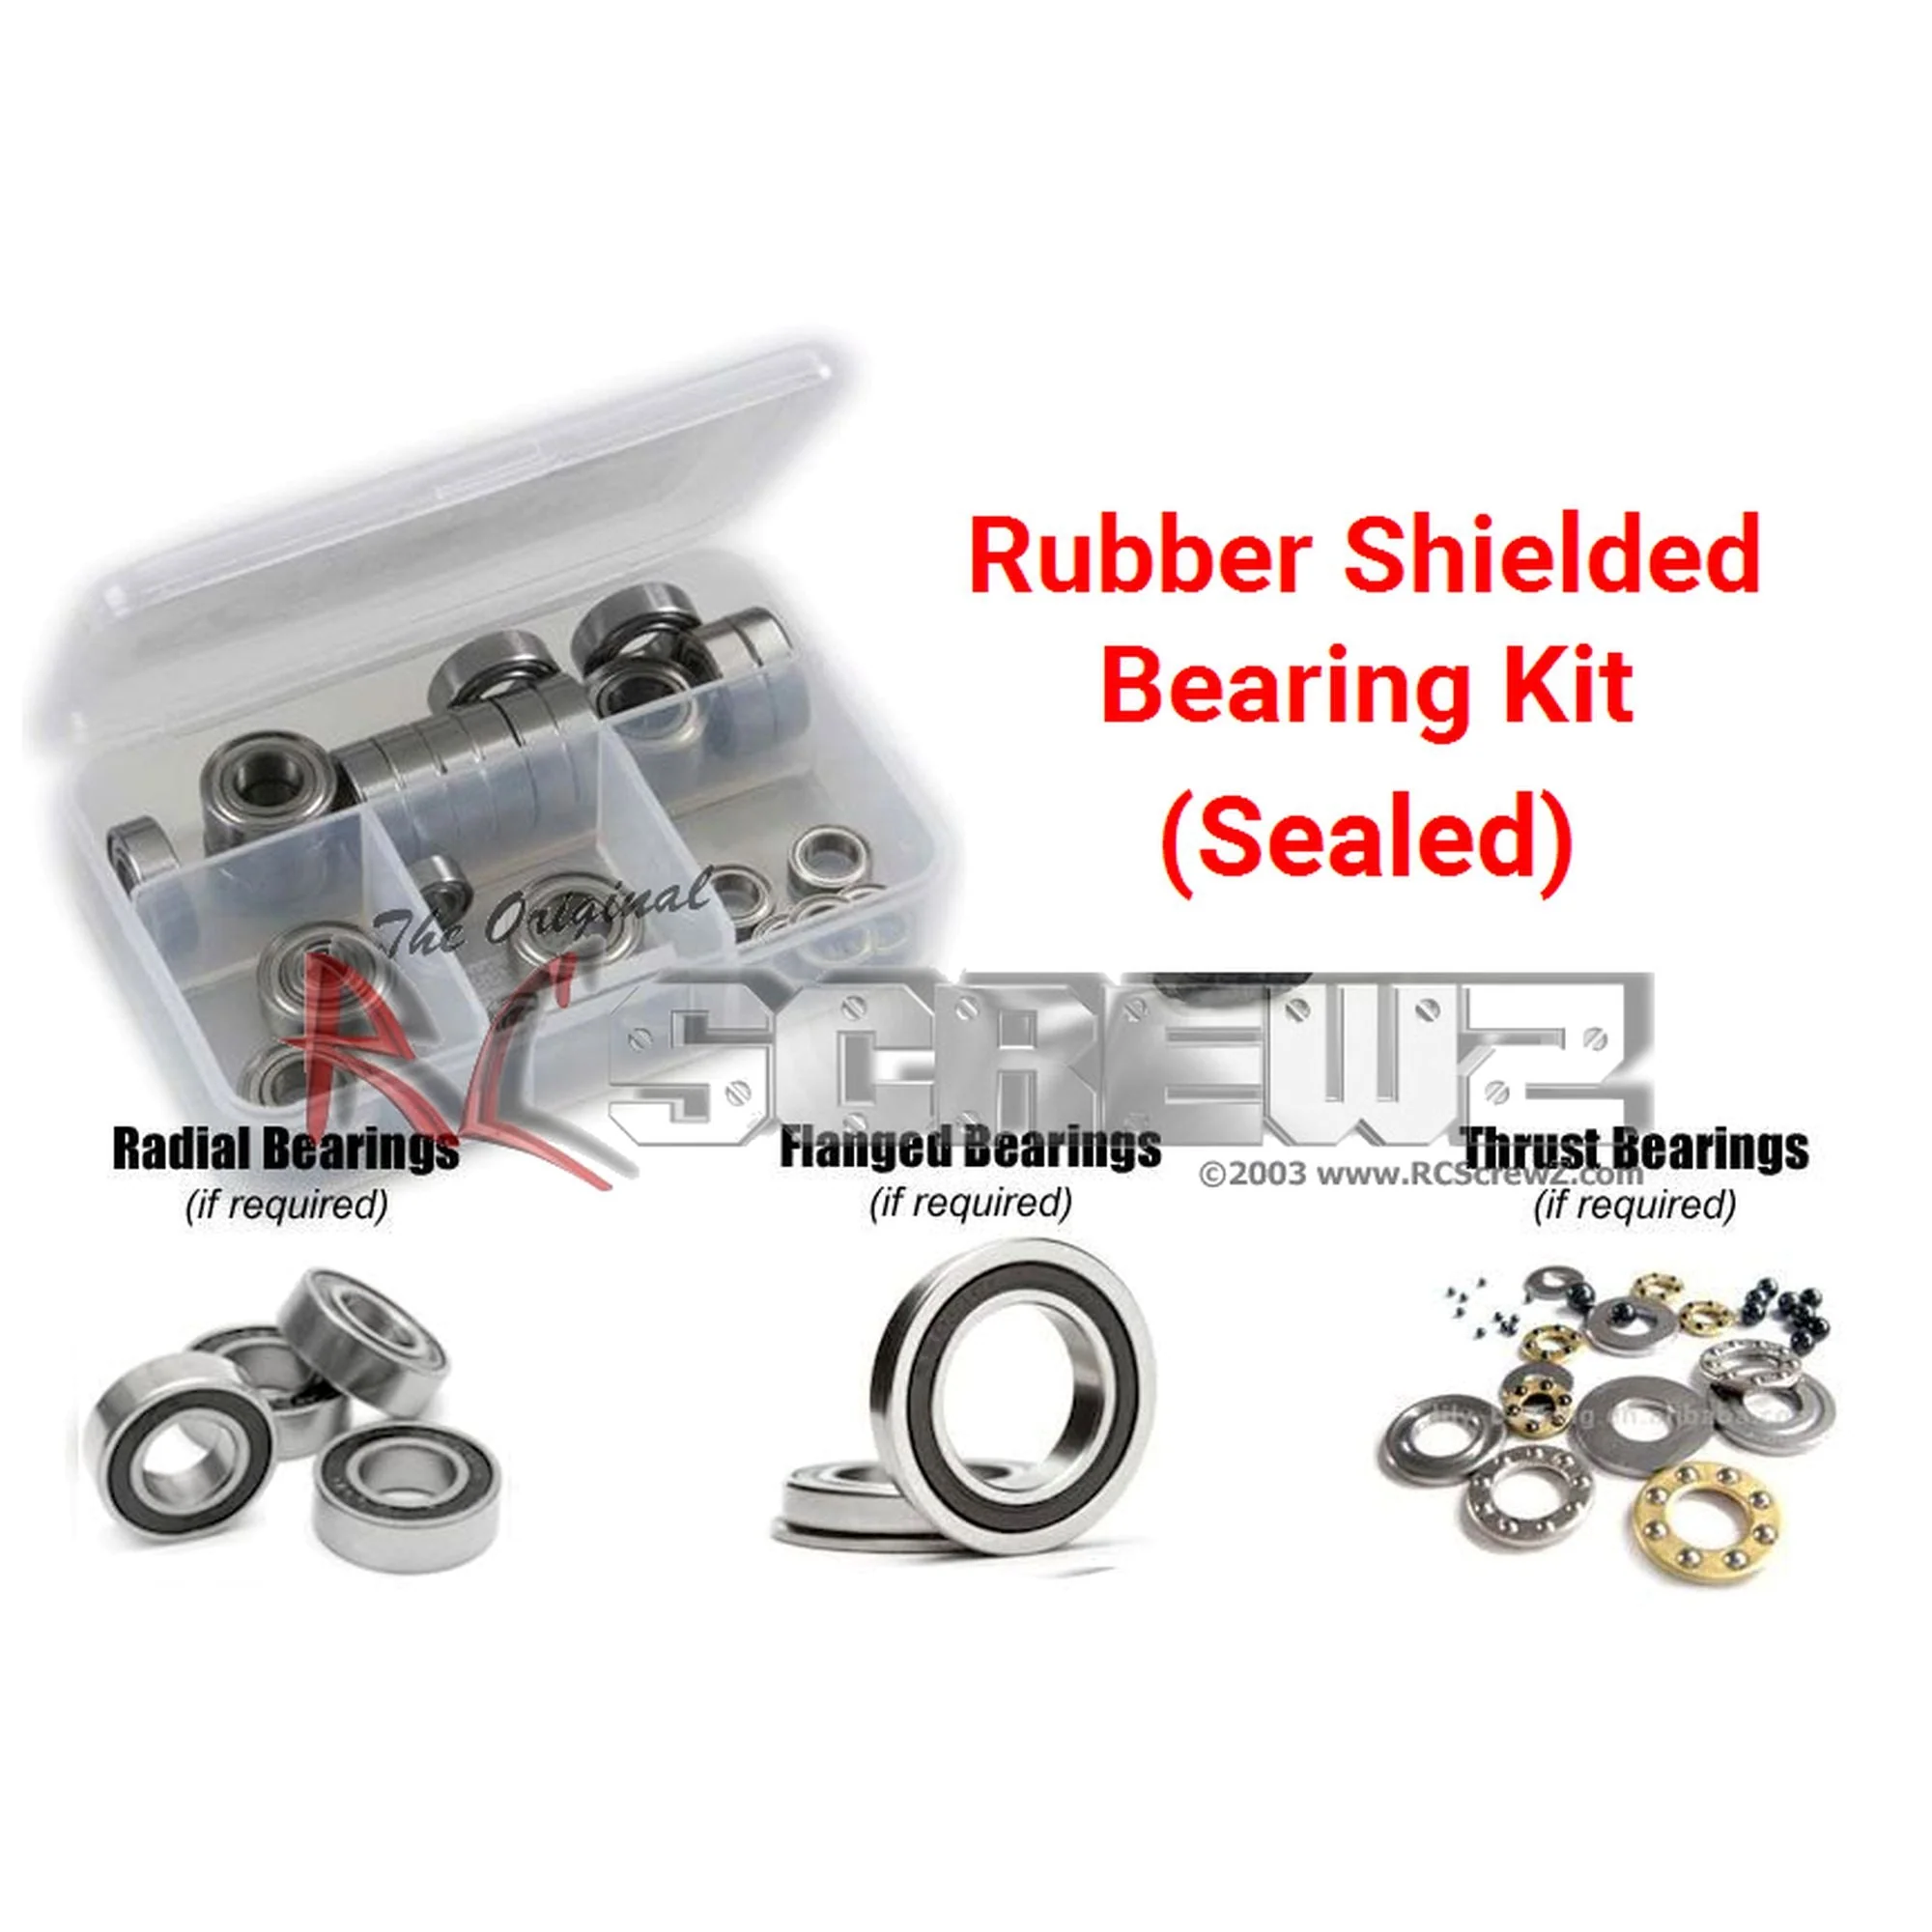 RCScrewZ Rubber Shielded Bearing Kit vat005r for Vaterra Nissan GTR - Picture 1 of 12